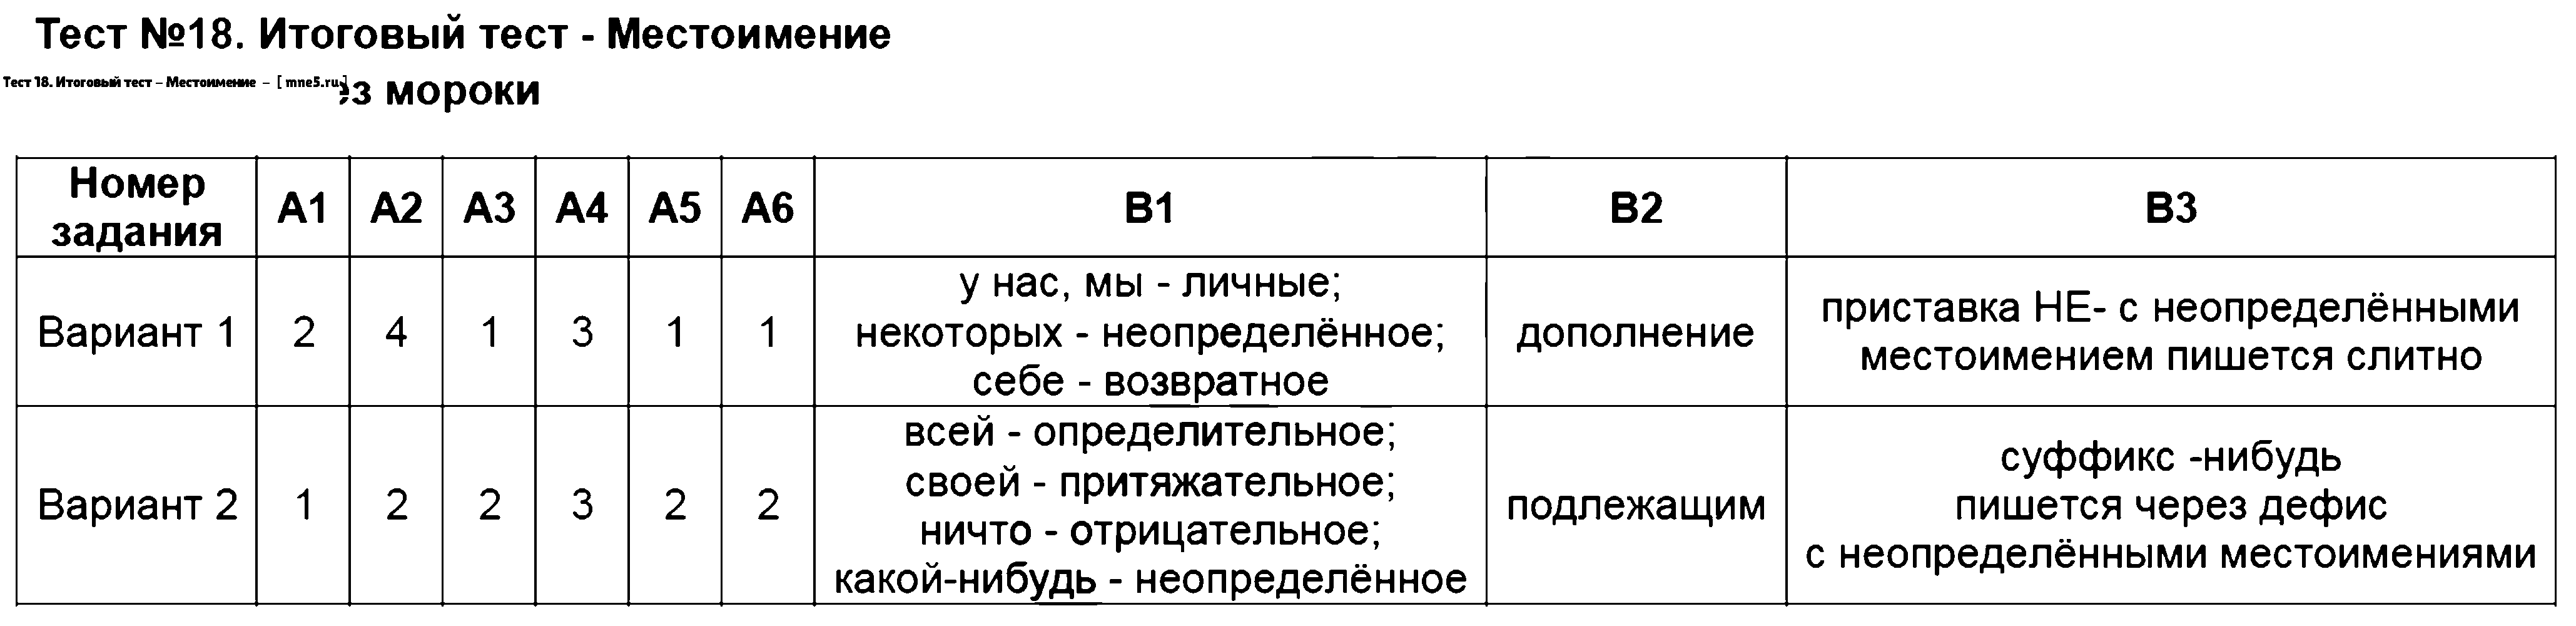 ГДЗ Русский язык 6 класс - Тест 18. Итоговый тест - Местоимение